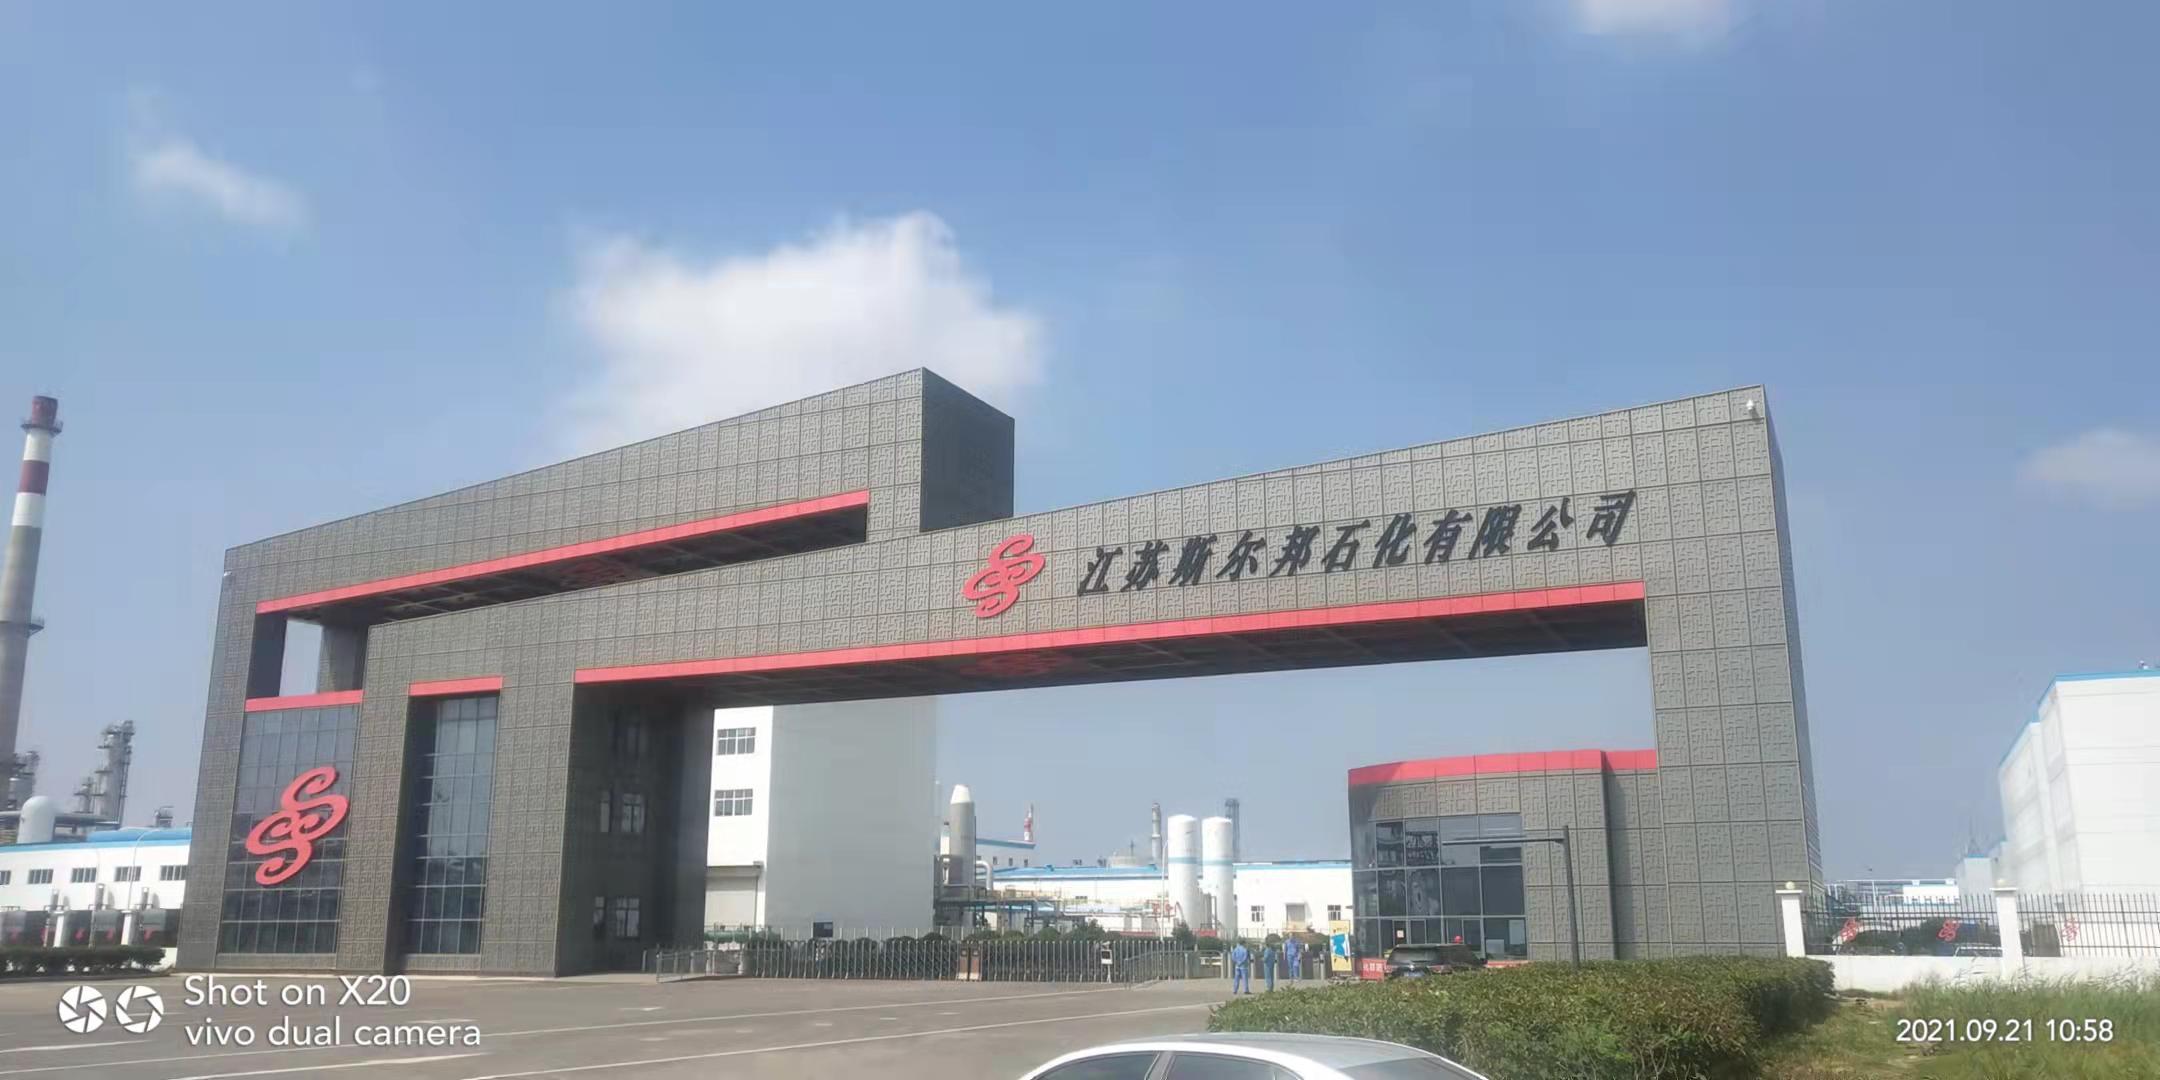 Jiangsu Shenghong refining and chemical integration project